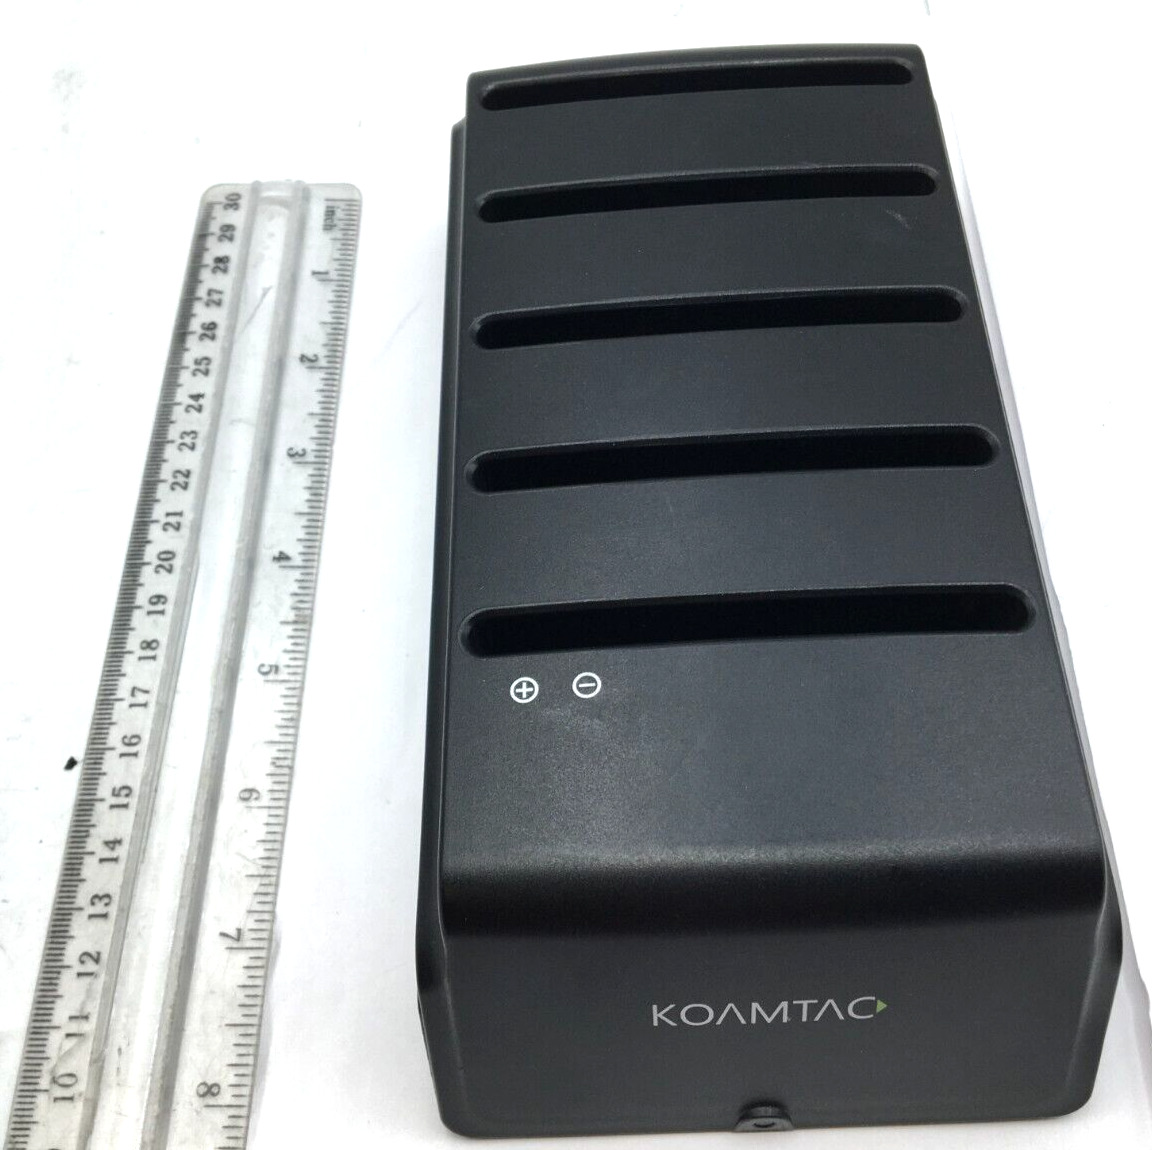 Koamtac Samsung Galaxy Tab Active 5 Slot Battery Charger GTA-5BC Working